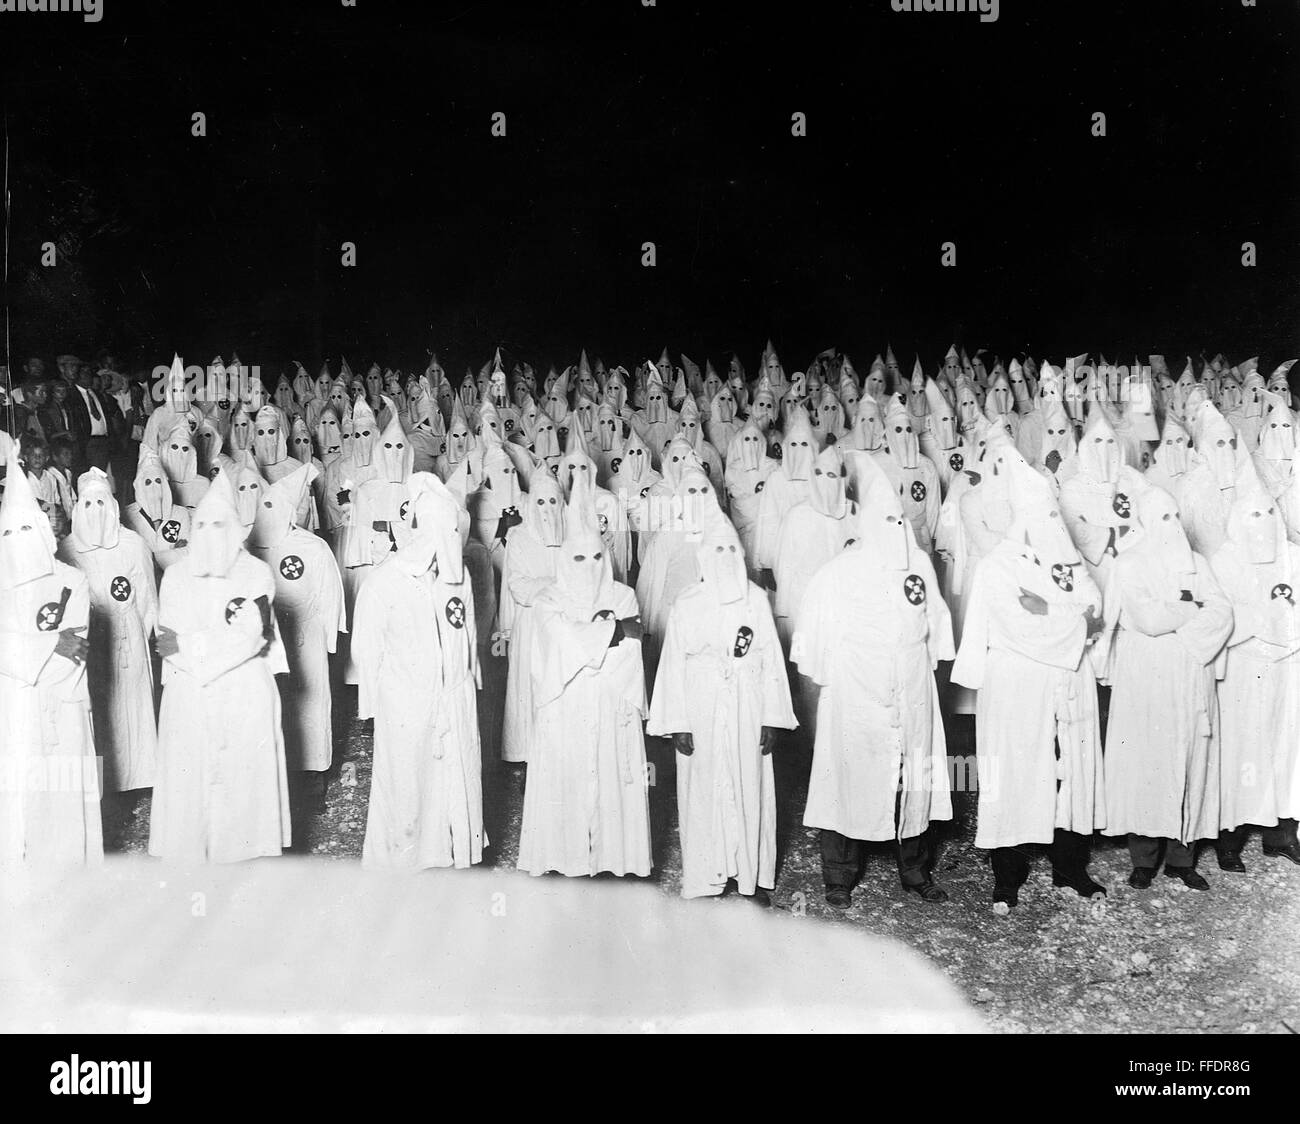 KU KLUX KLAN, c1921. /nA gathering of the Ku Klux Klan at night. Photograph, c1921-1922. Stock Photo